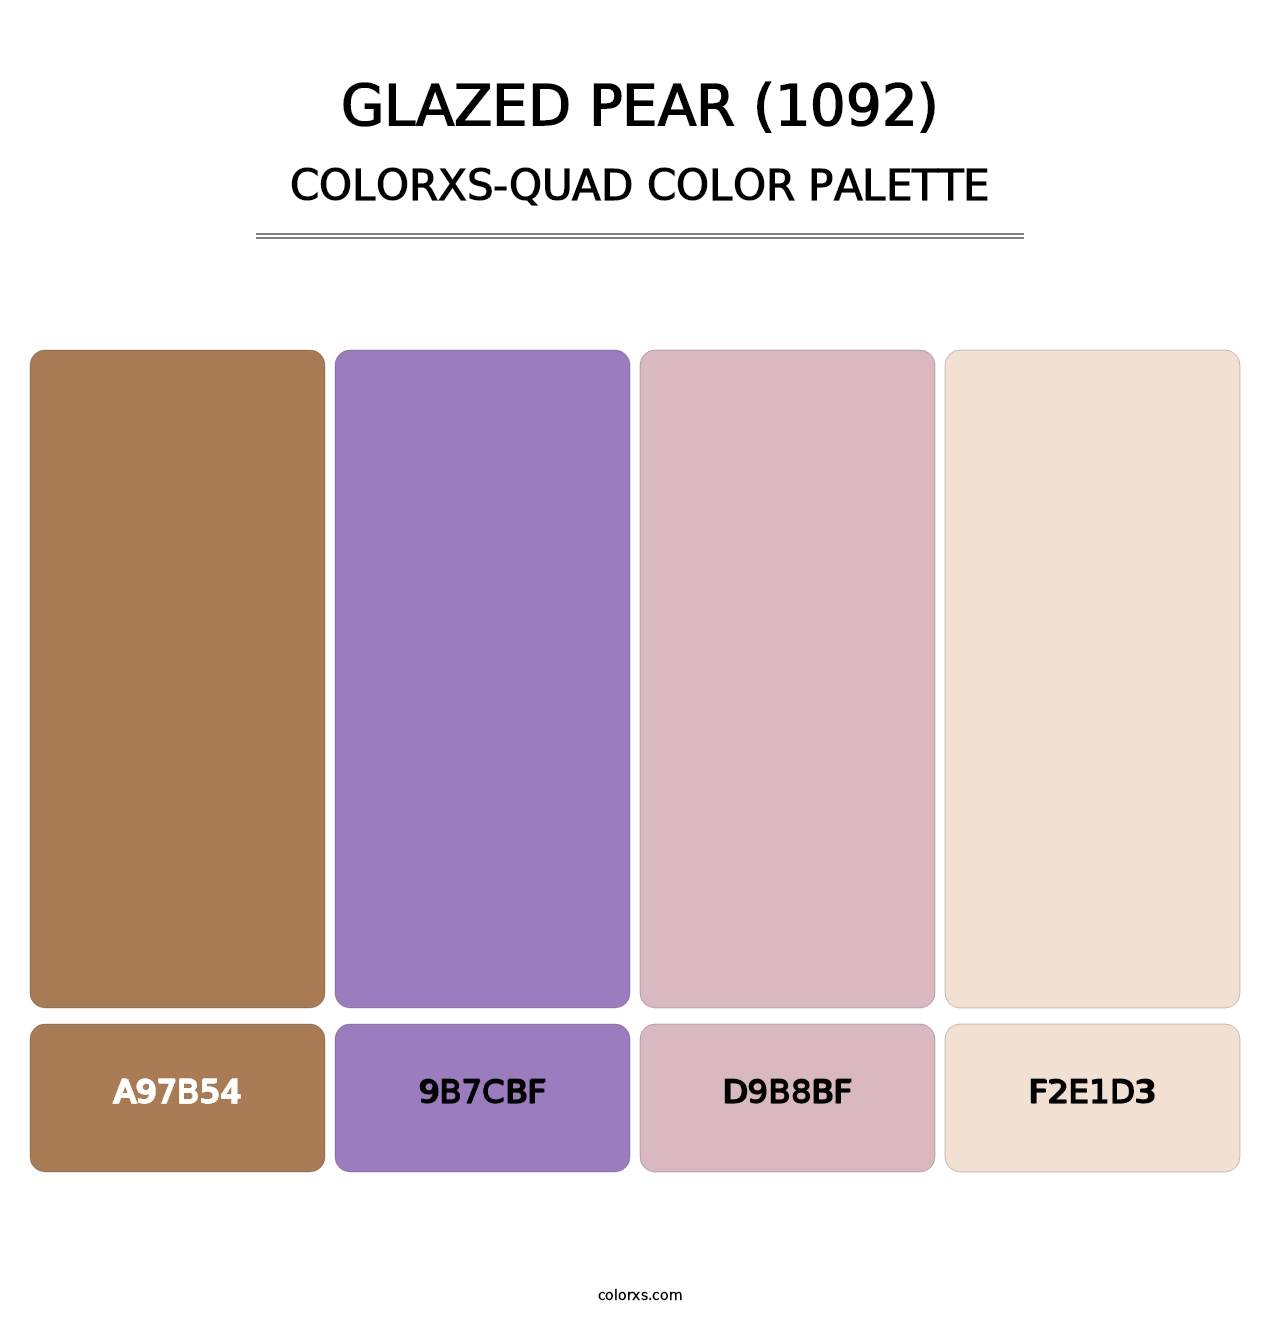 Glazed Pear (1092) - Colorxs Quad Palette